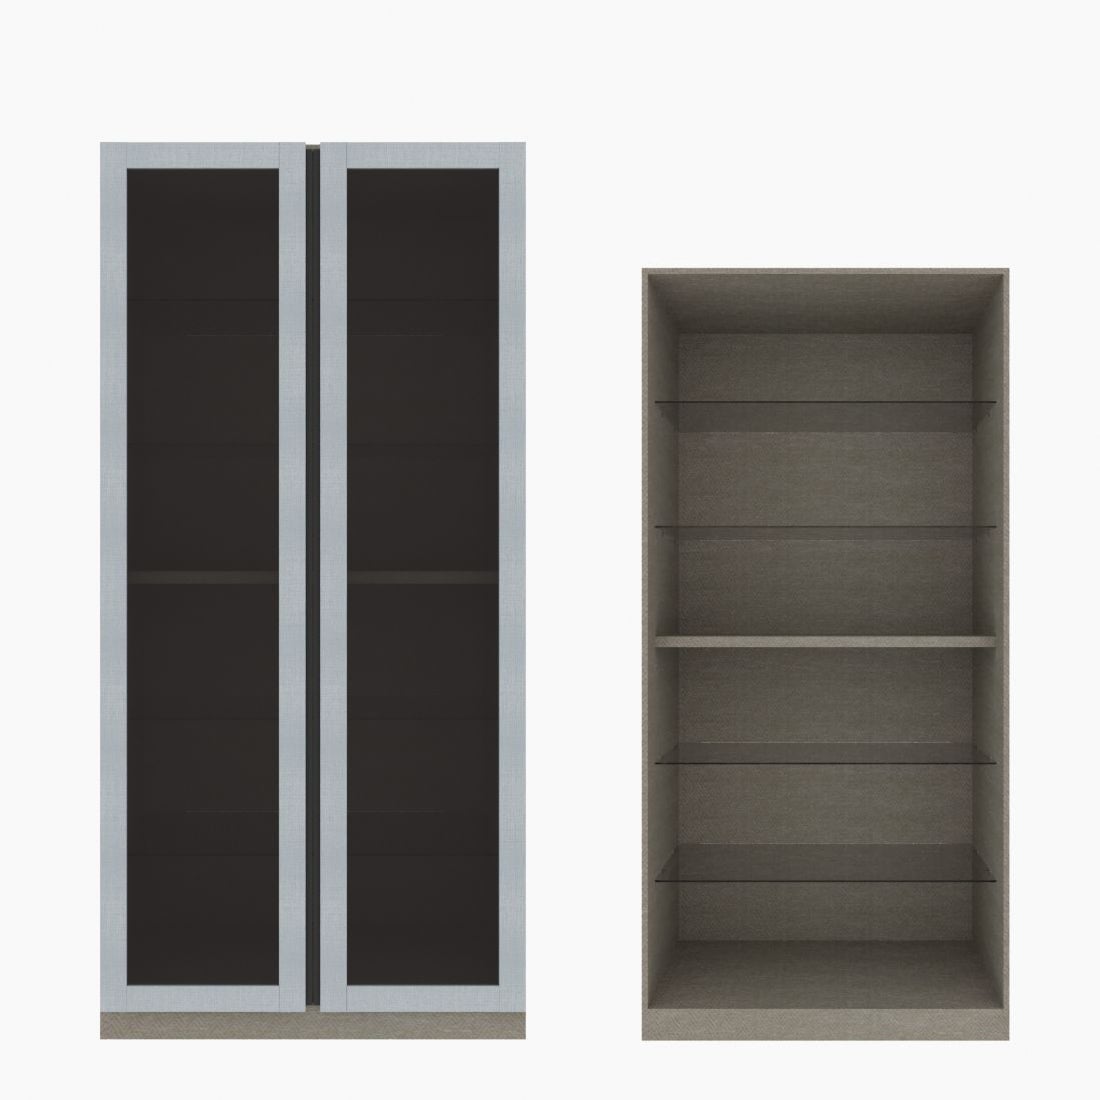 ตู้โชว์ชั้นกระจก OP-H ขนาด 100 ซม. รุ่น Blox สีขาวลายผ้า&กระจกชาดำ01